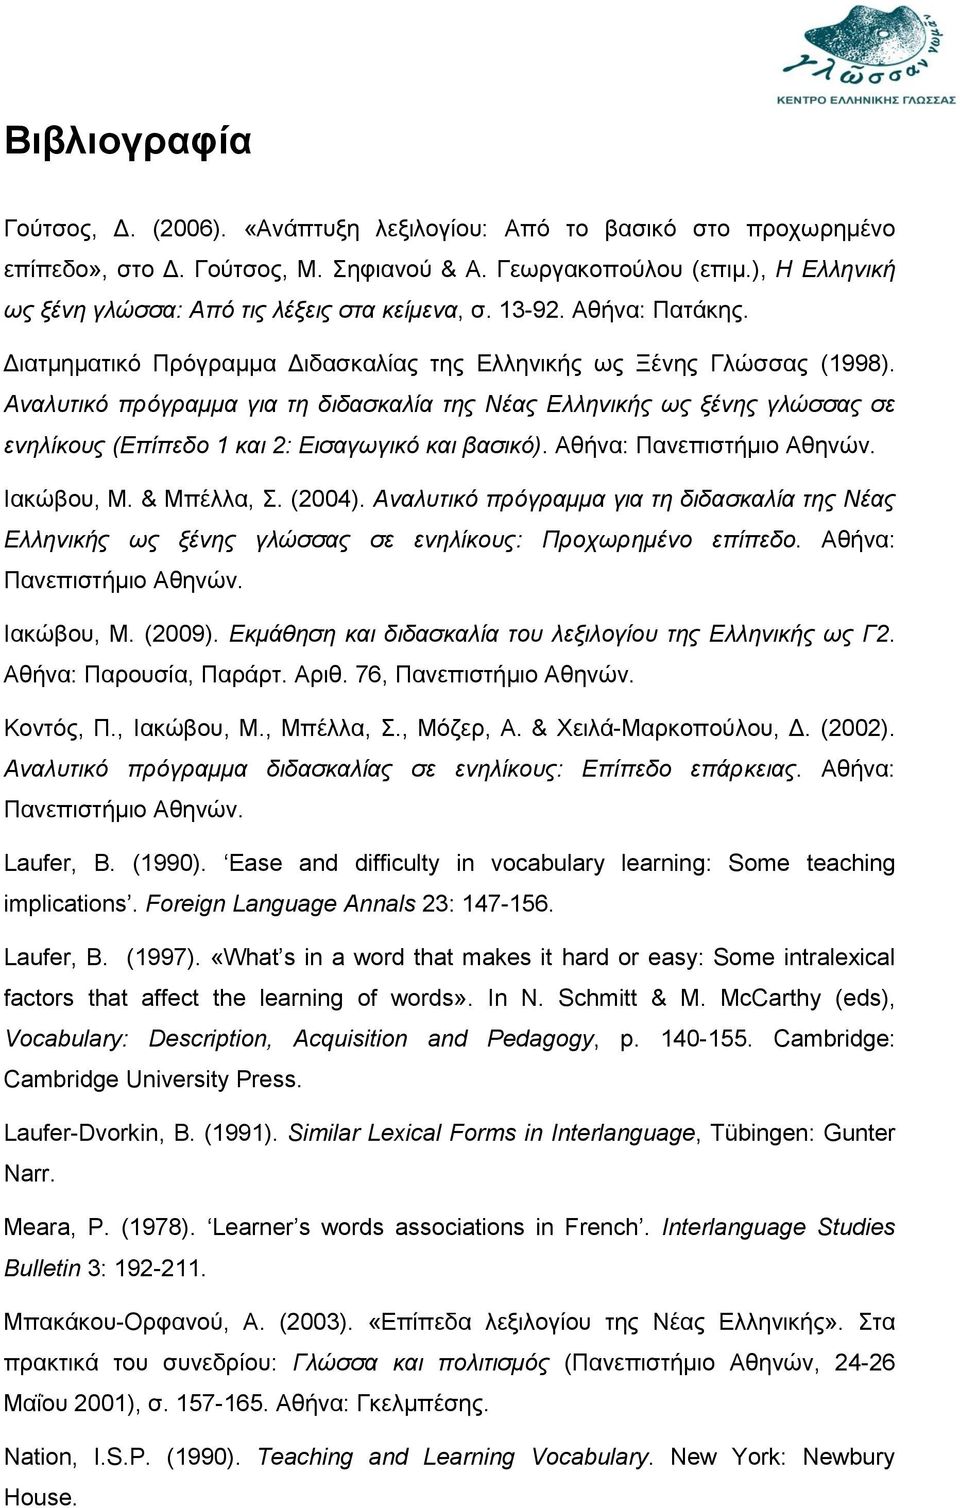 Αναλυτικό πρόγραμμα για τη διδασκαλία της Νέας Ελληνικής ως ξένης γλώσσας σε ενηλίκους (Επίπεδο 1 και 2: Εισαγωγικό και βασικό). Αθήνα: Πανεπιστήμιο Αθηνών. Ιακώβου, Μ. & Μπέλλα, Σ. (2004).